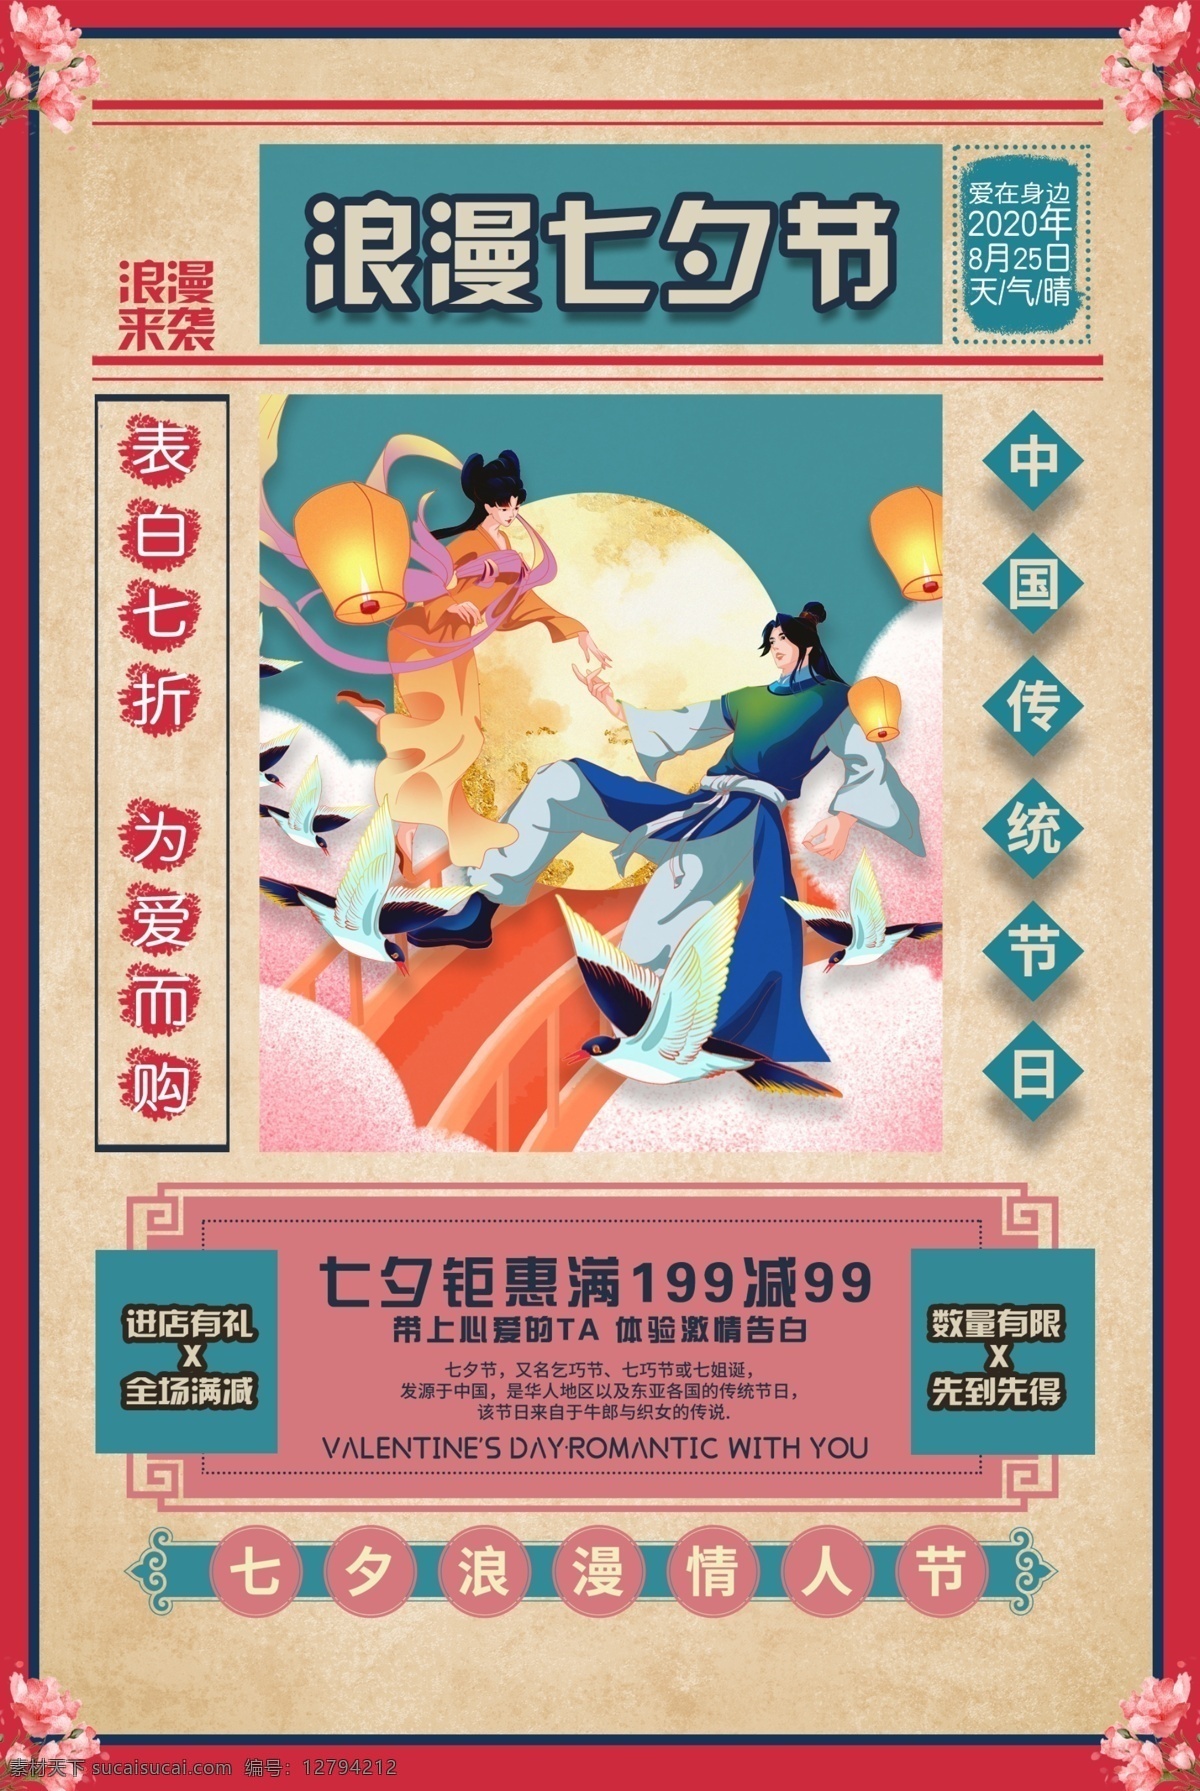 七夕 传统节日 促销活动 海报 传统 节日 促销 活动 传统节日海报